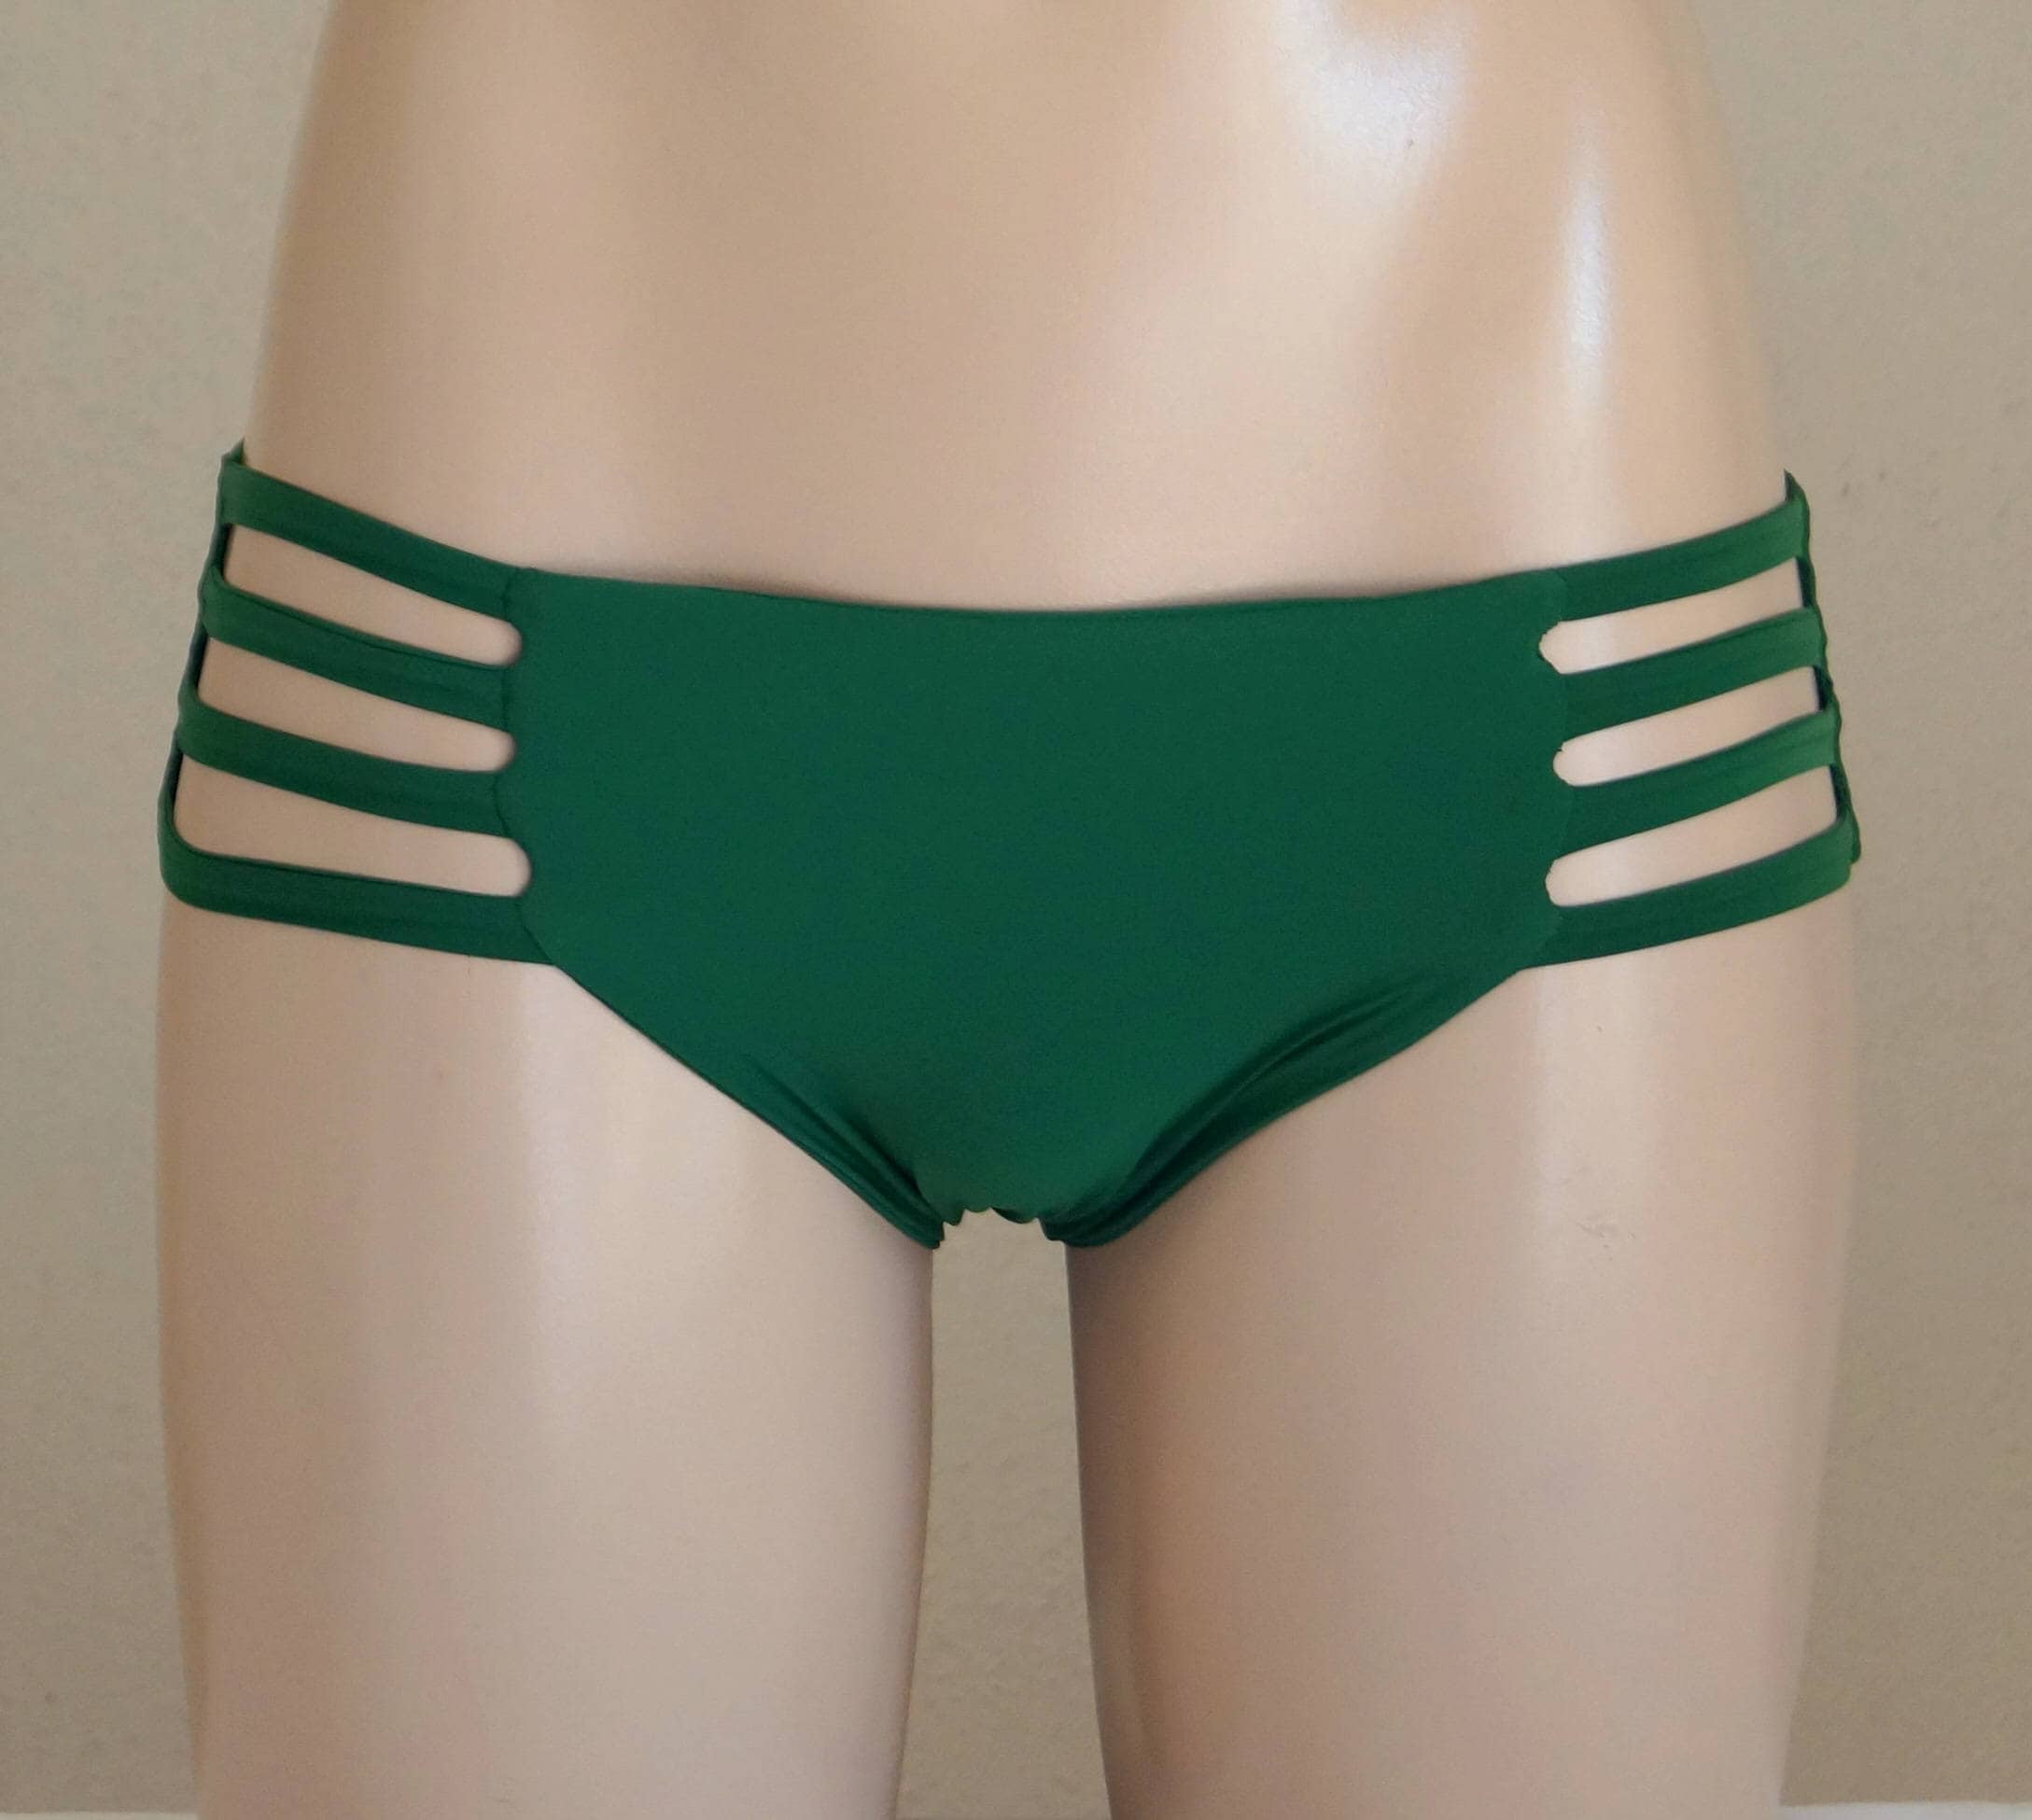 Emerald Green Wrap Bikini Top Full Coverage Boyshort Bikini